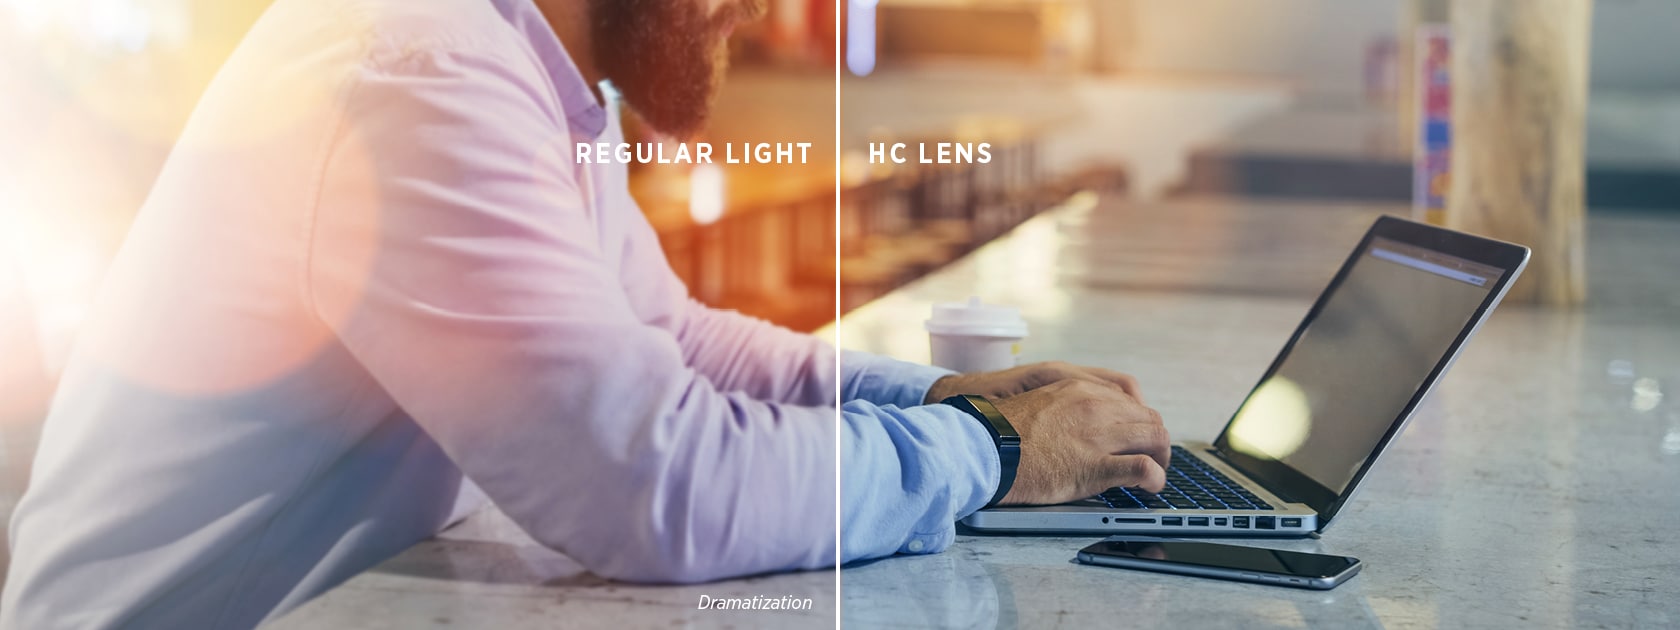 Geteiltes Bild eines Mannes, der an einem Laptop auf einem Tisch arbeitet, was den Unterschied zwischen normalem Licht und HC-Glas zeigt